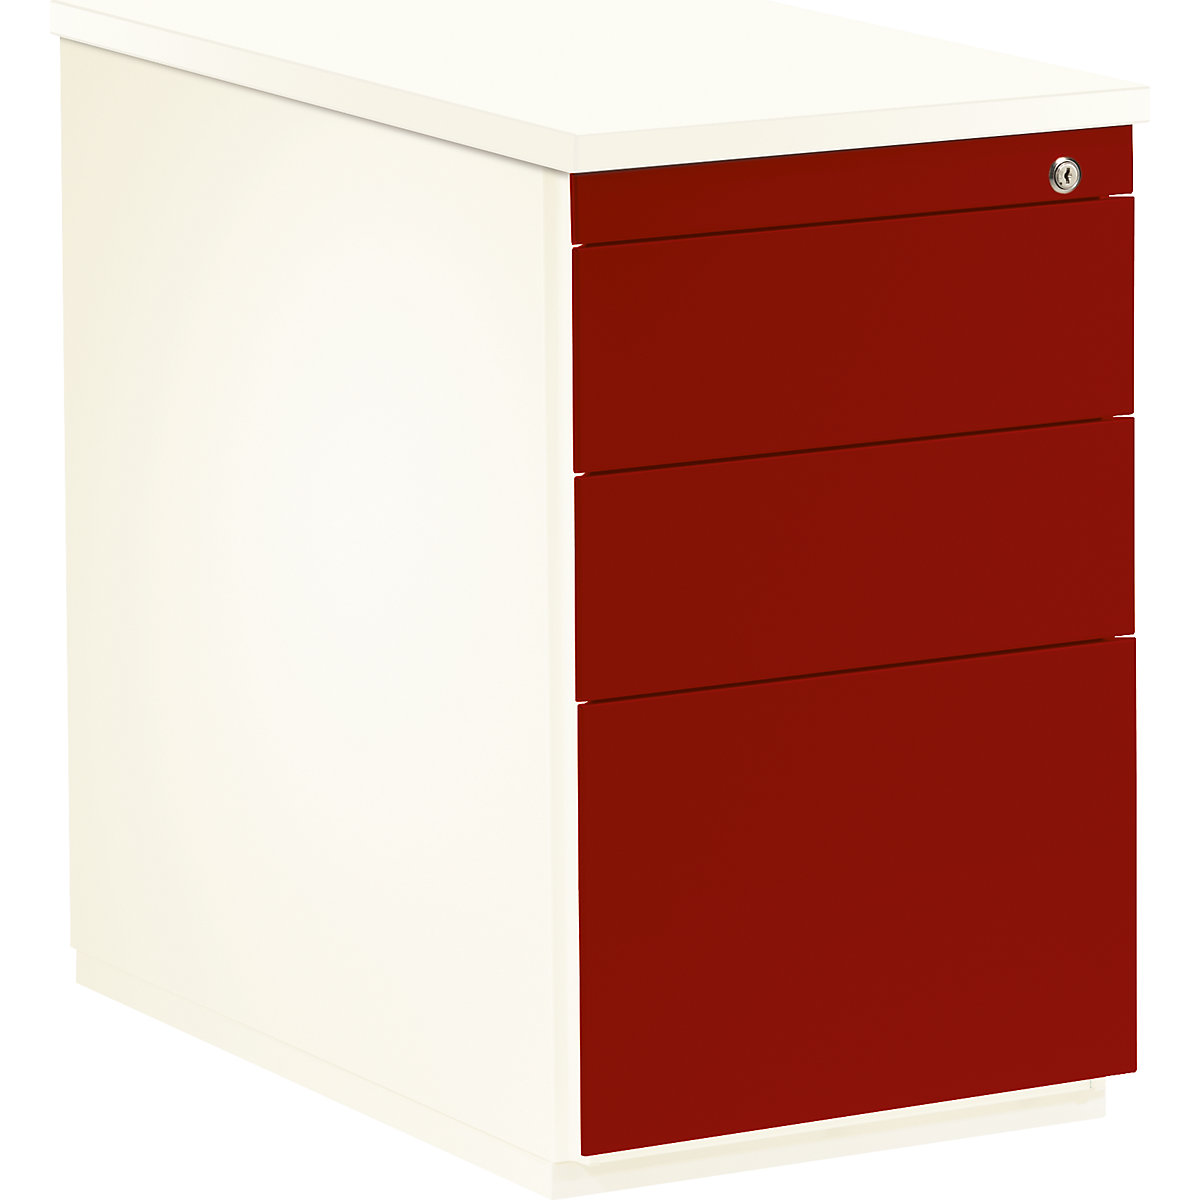 mauser – Casetieră cu sertare, î. x ad. 720 x 800 mm, 2 sertare pentru materiale, 1 registratură suspendată, alb pur / roșu rubin / alb pur